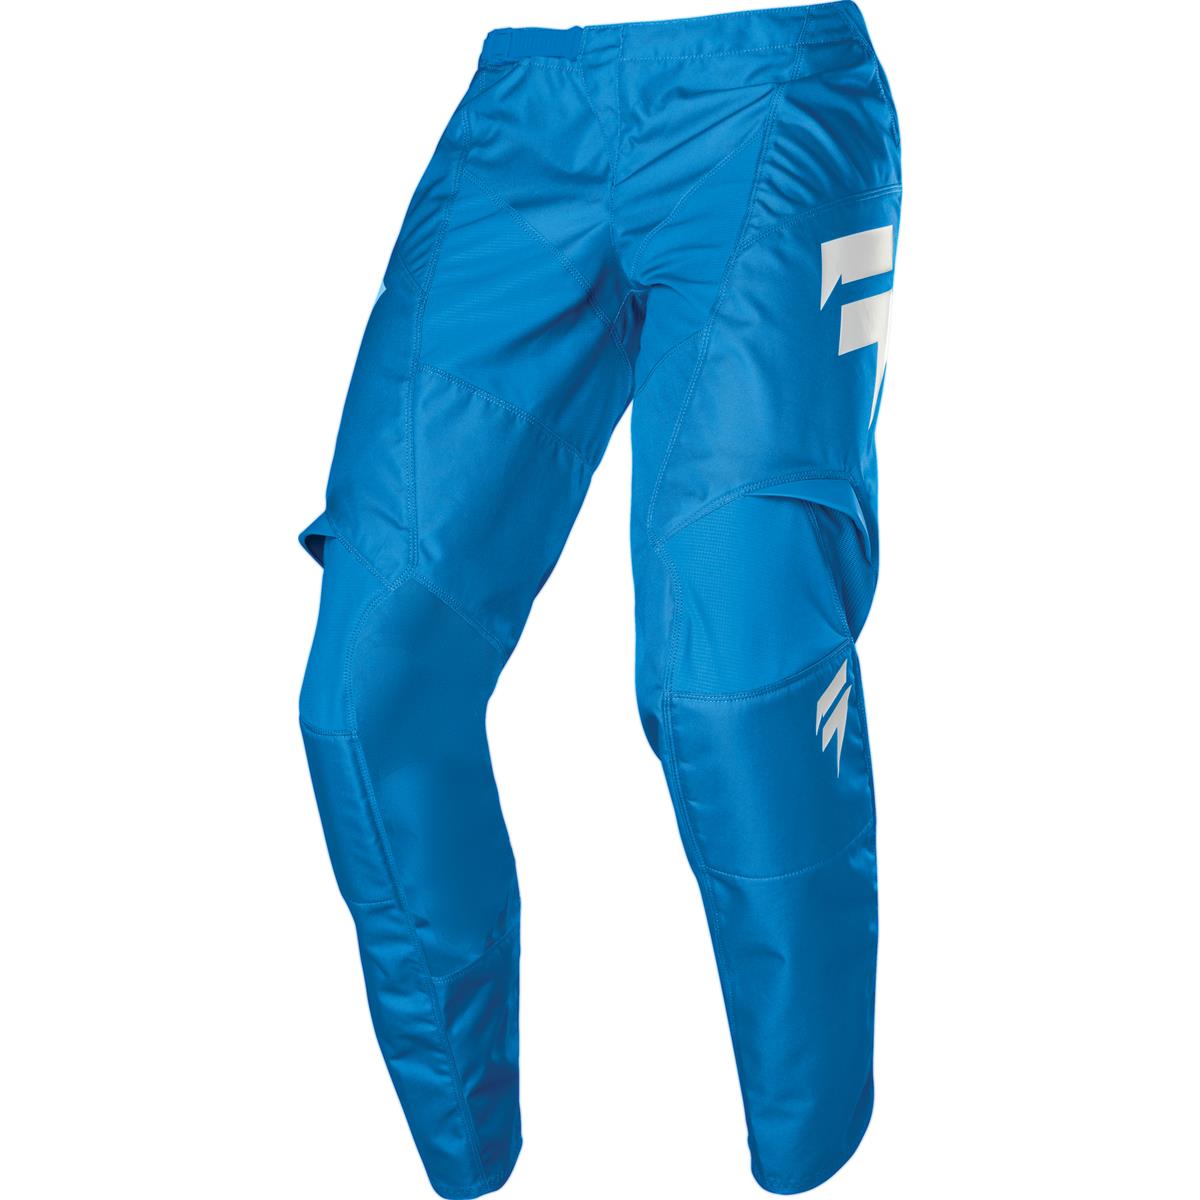 Shift MX Pants Whit3 Label Race Blue